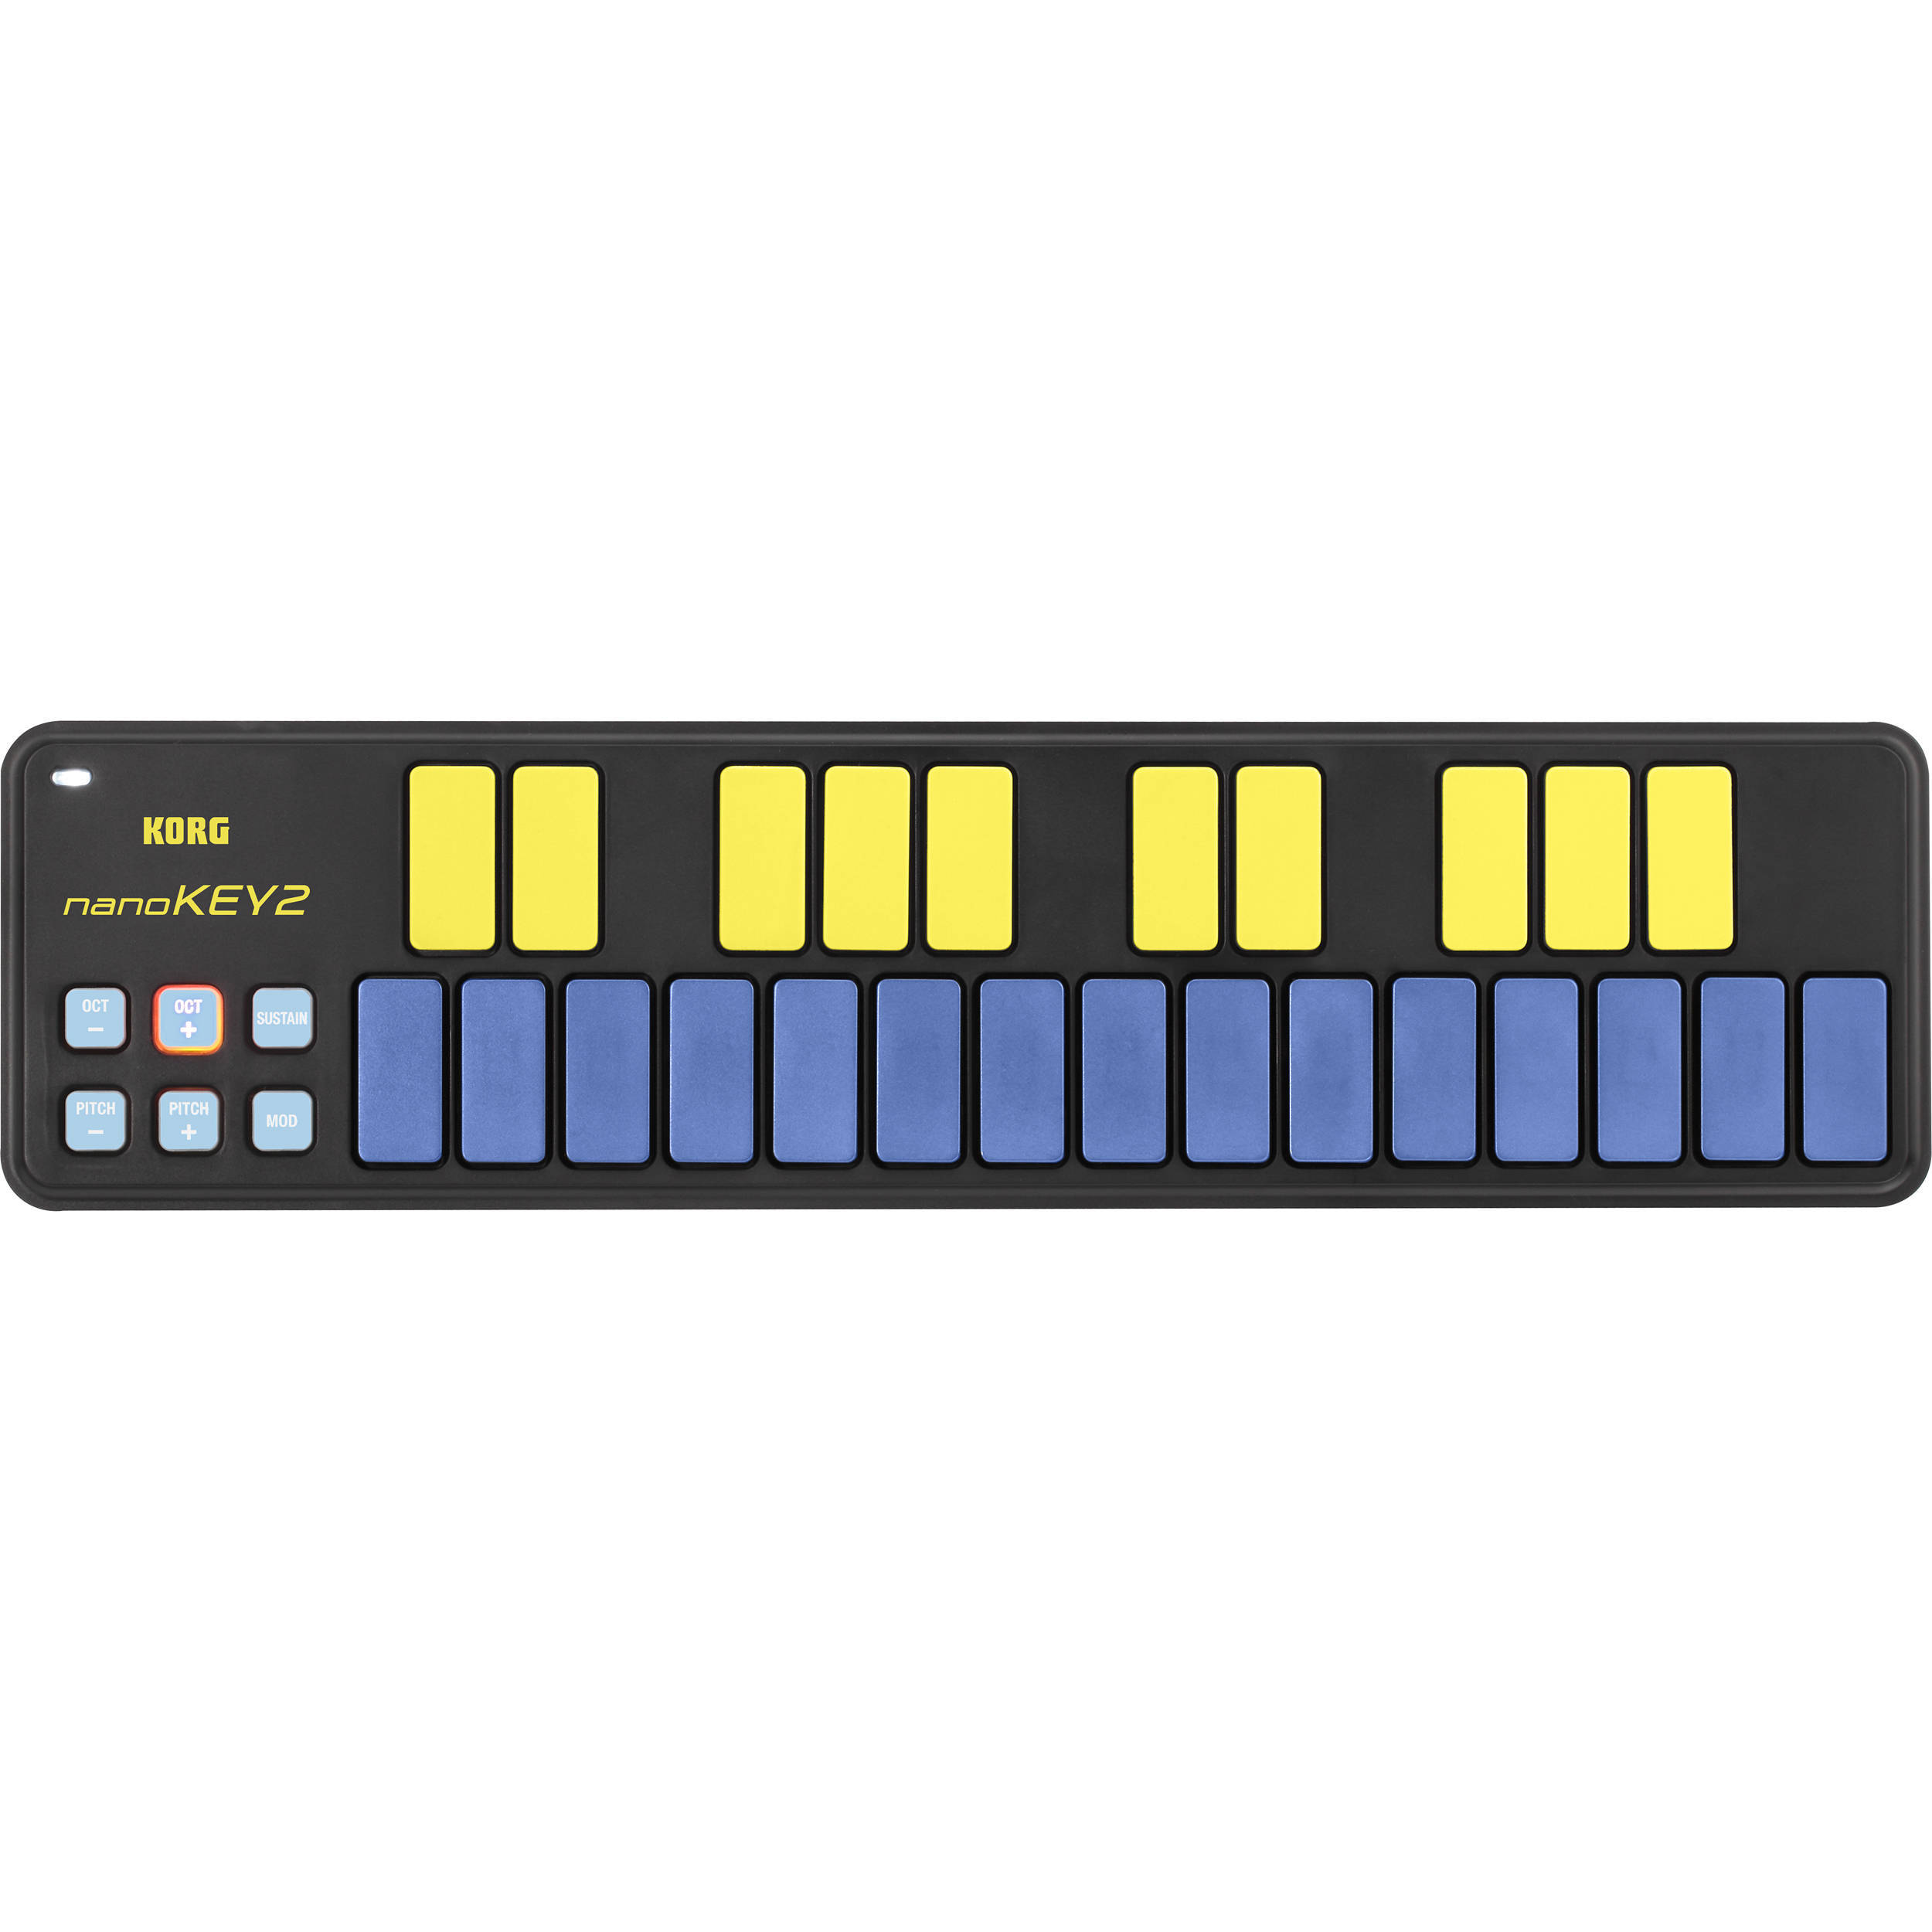 Korg nanoKEY2 25鍵USB MIDI 鍵盤控制器